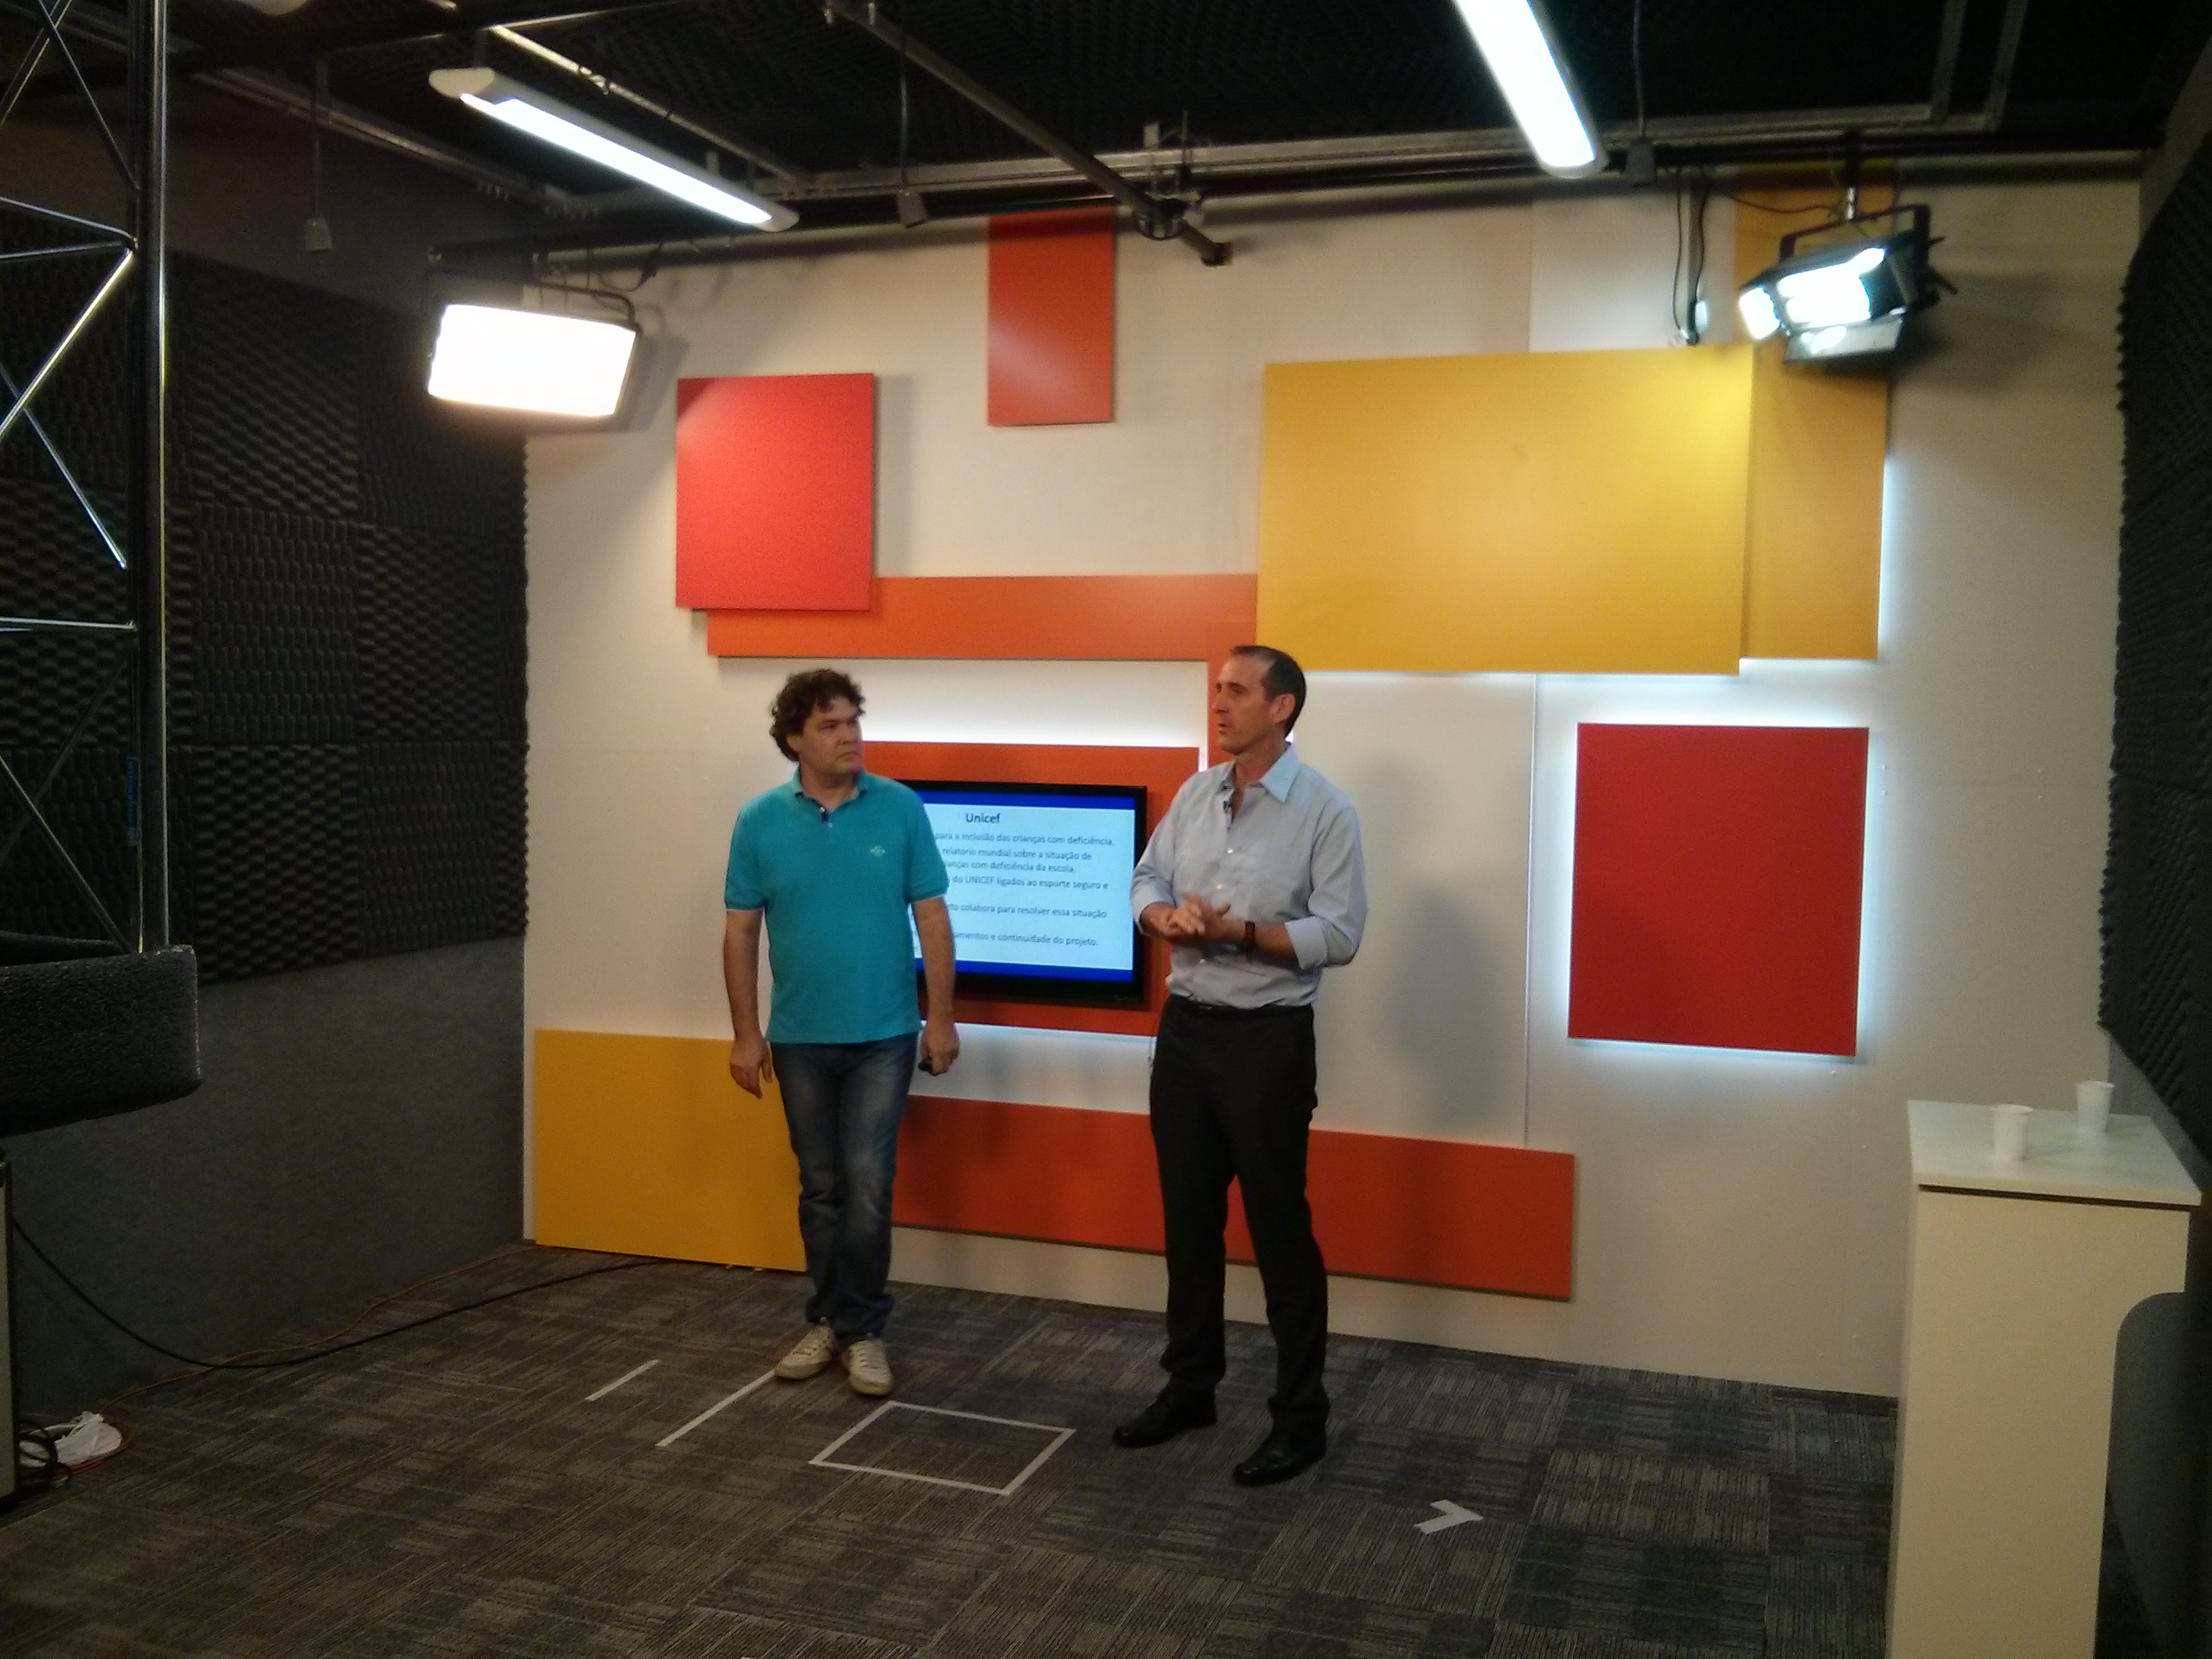 Em estúdio, dois homens estão em pé, a frente de uma parede com quadrados coloridos. Na parede há uma televisão e dois refletores posicionados nos cantos superiores.